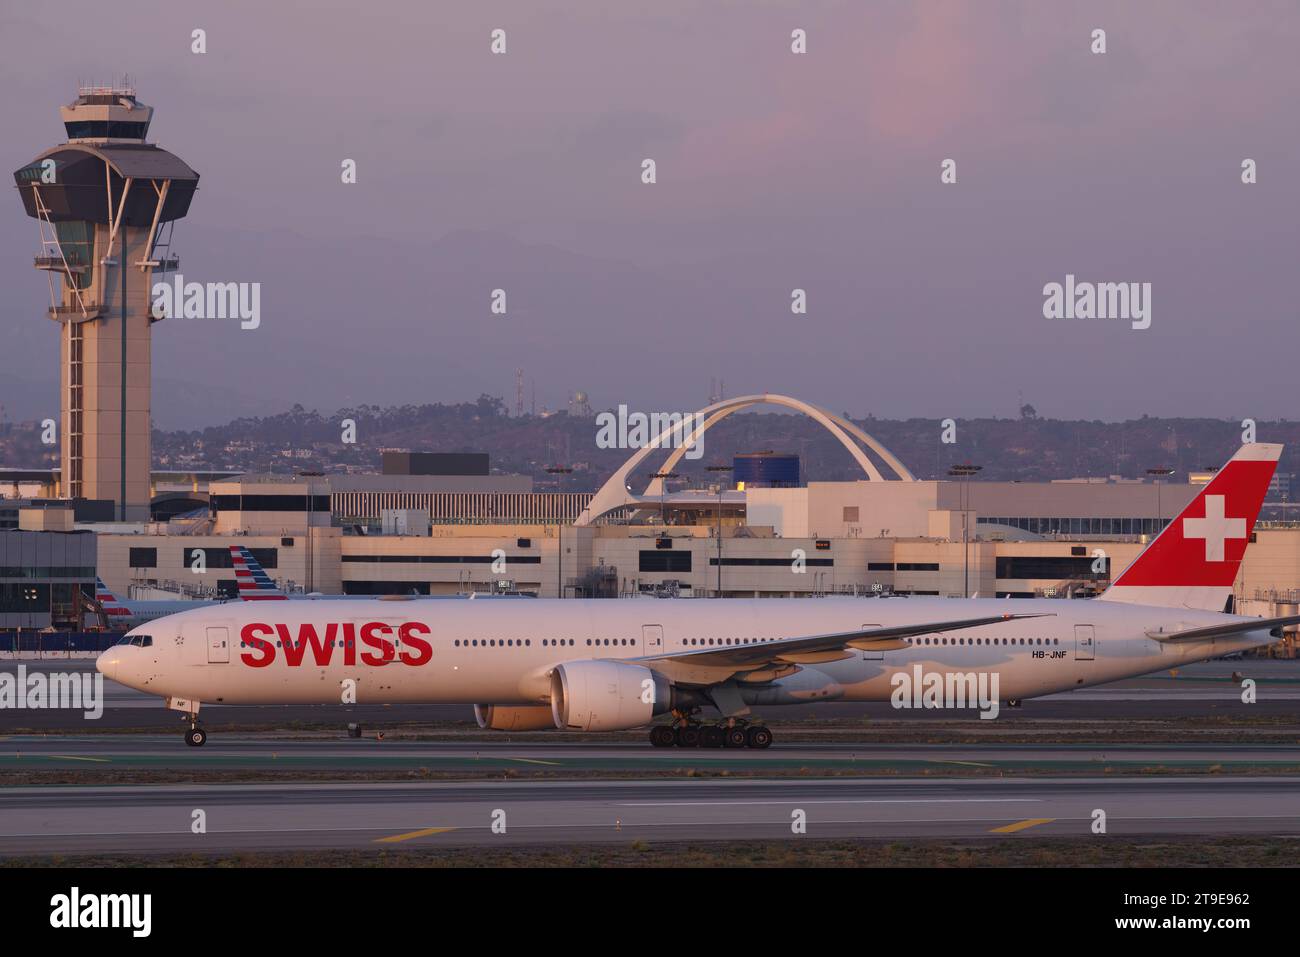 Swiss Air Boeing 777 ha mostrato rullaggio poco dopo l'atterraggio a LAX, Aeroporto Internazionale di Los Angeles. Foto Stock